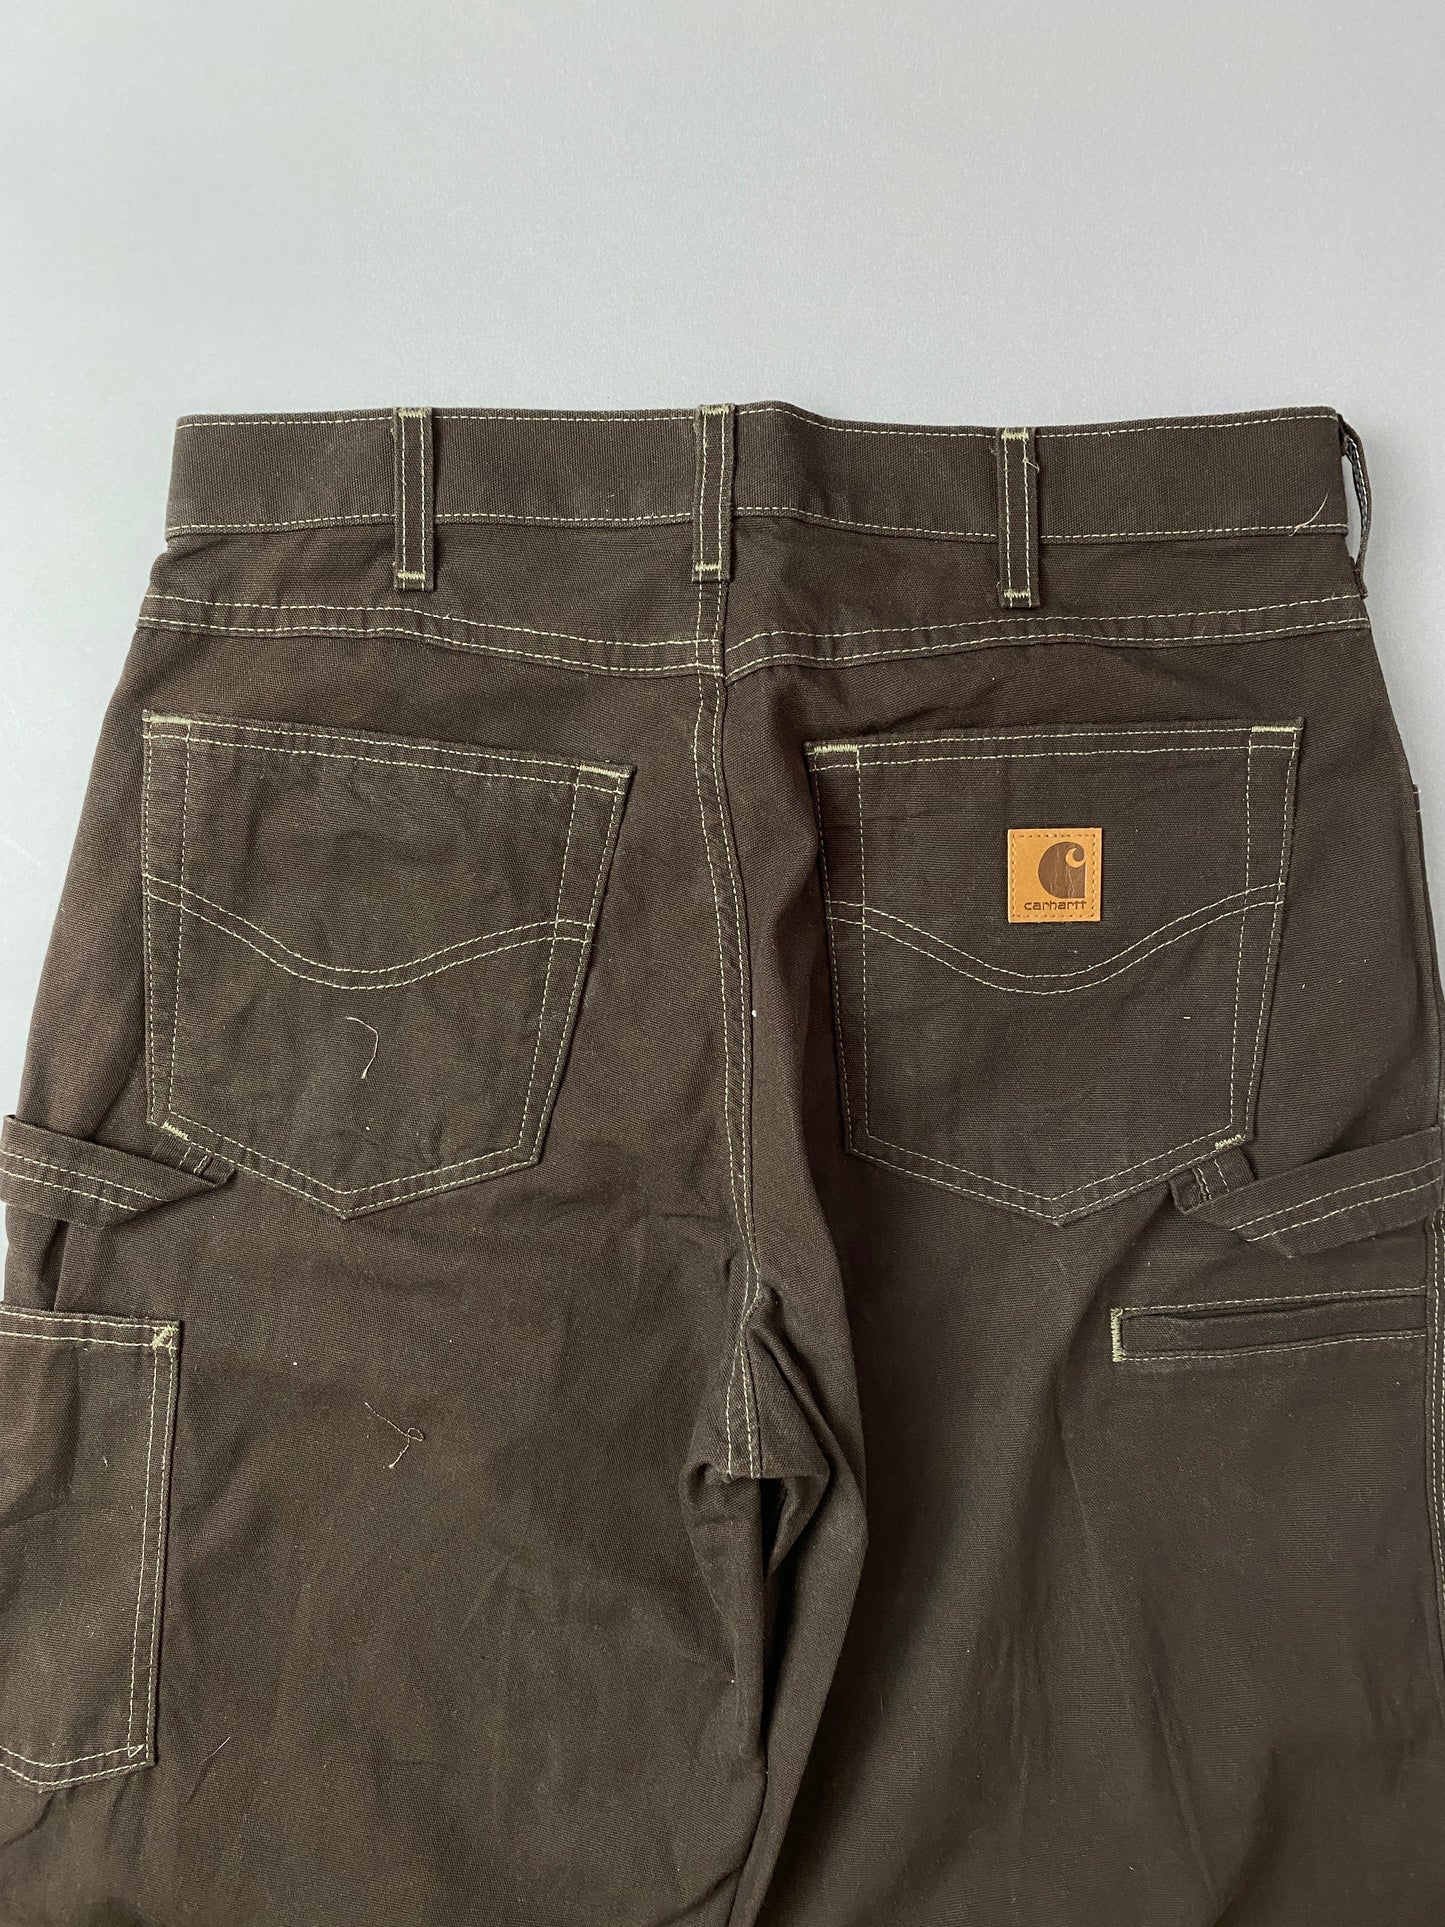 Pantalones Carhartt Carpenter - 32 x 34